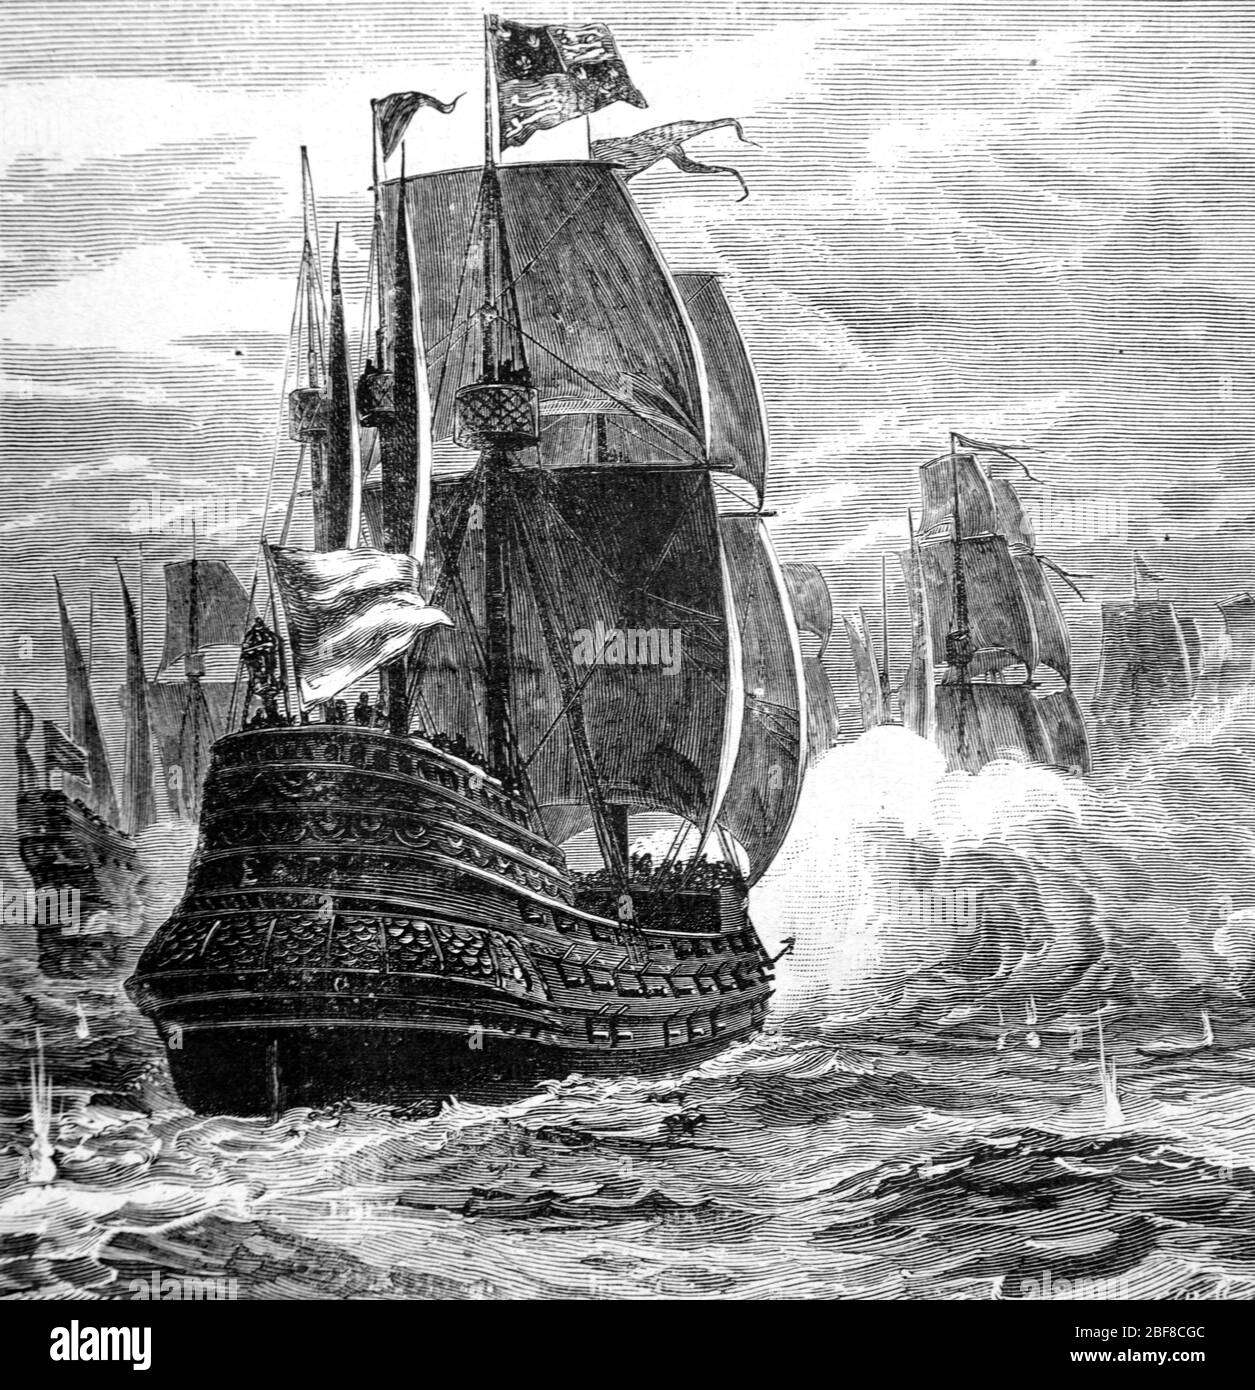 Spanische Armada Naval Schlacht gegen britische Royal Navy oder englische Flotte im Ärmelkanal. Die Armada bestand aus 130 spanischen Schiffen, Teil des Anglo-Spanischen Krieges (1585-1604) und des Achtzigjährigen Krieges. Vintage oder Old Illustration oder Gravur 1888 Stockfoto